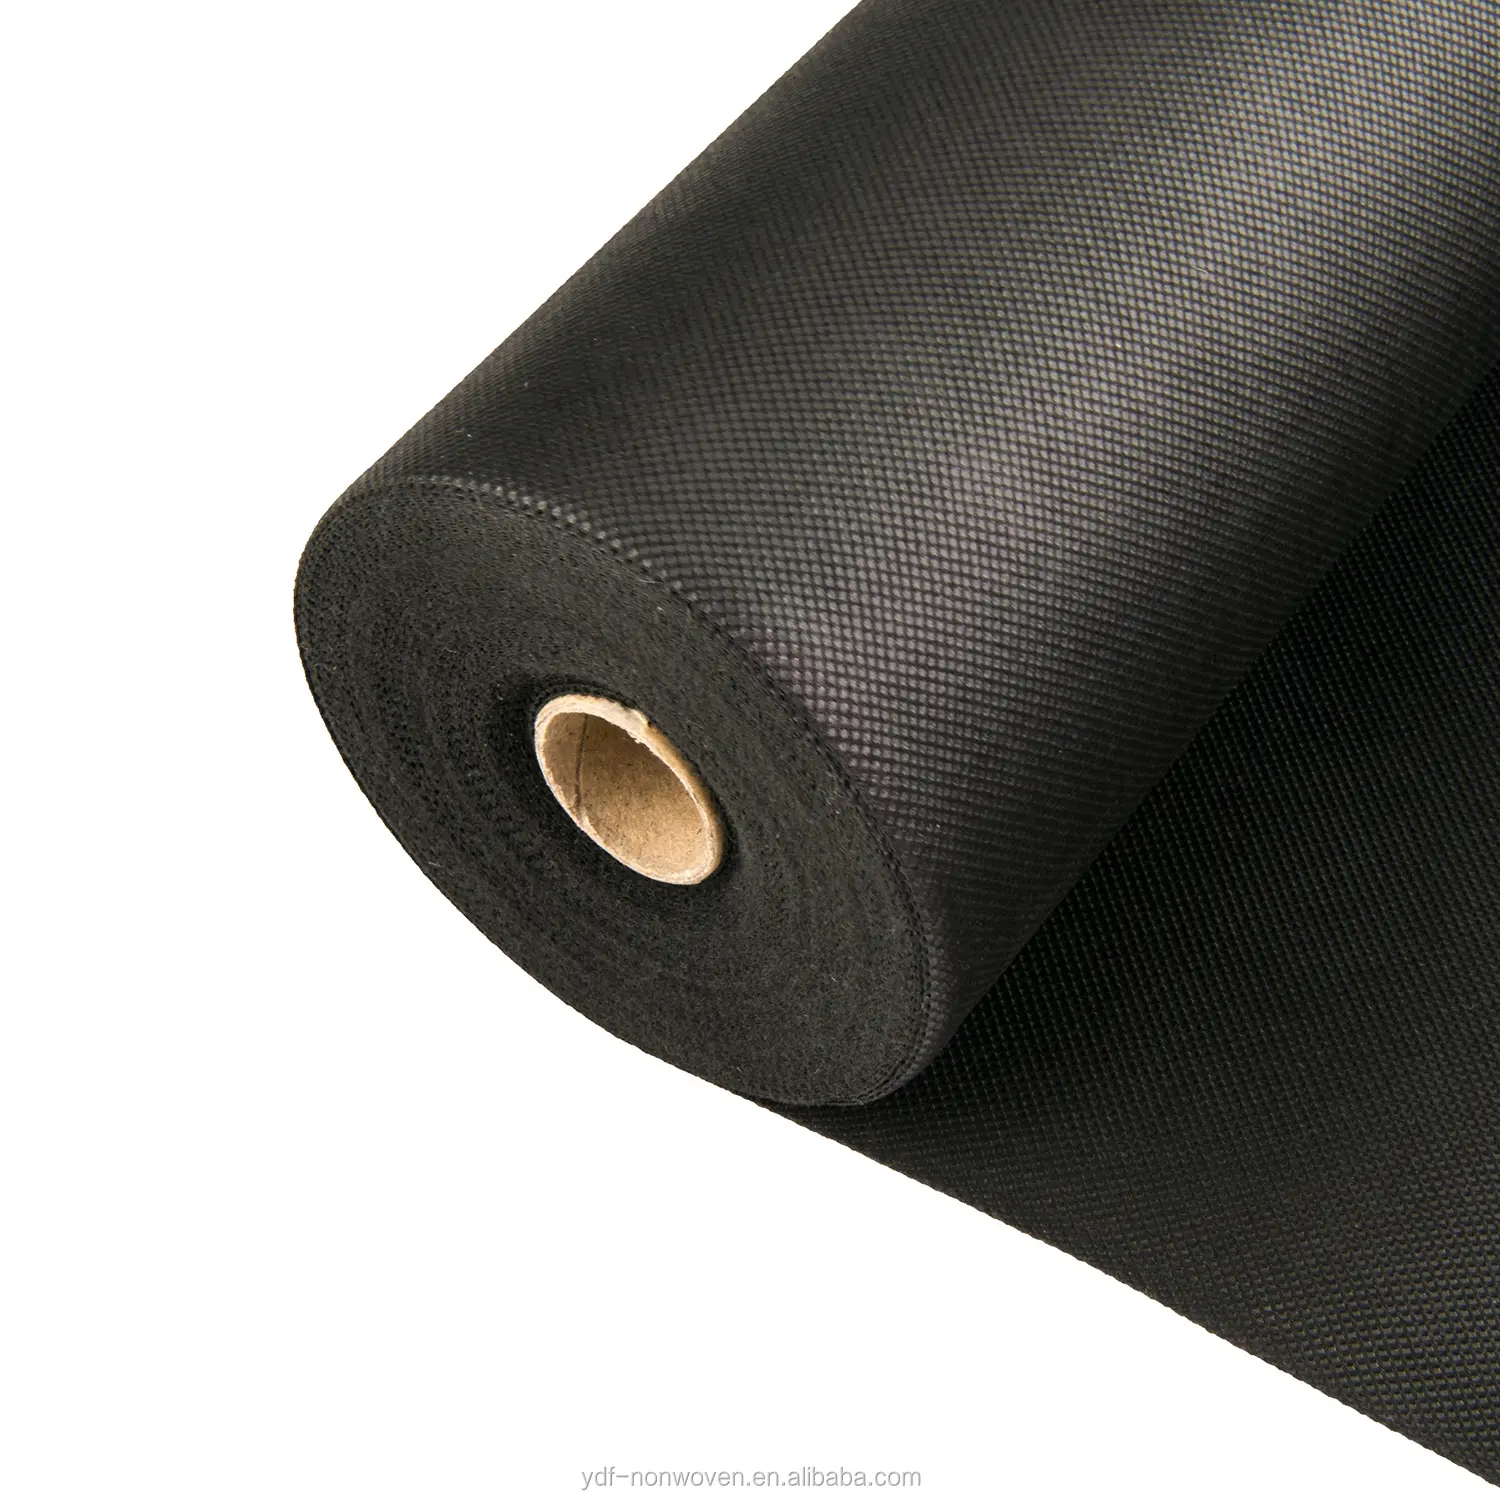 PP Spun bonded Non-woven Fabric, polypropylene nonwoven fabric